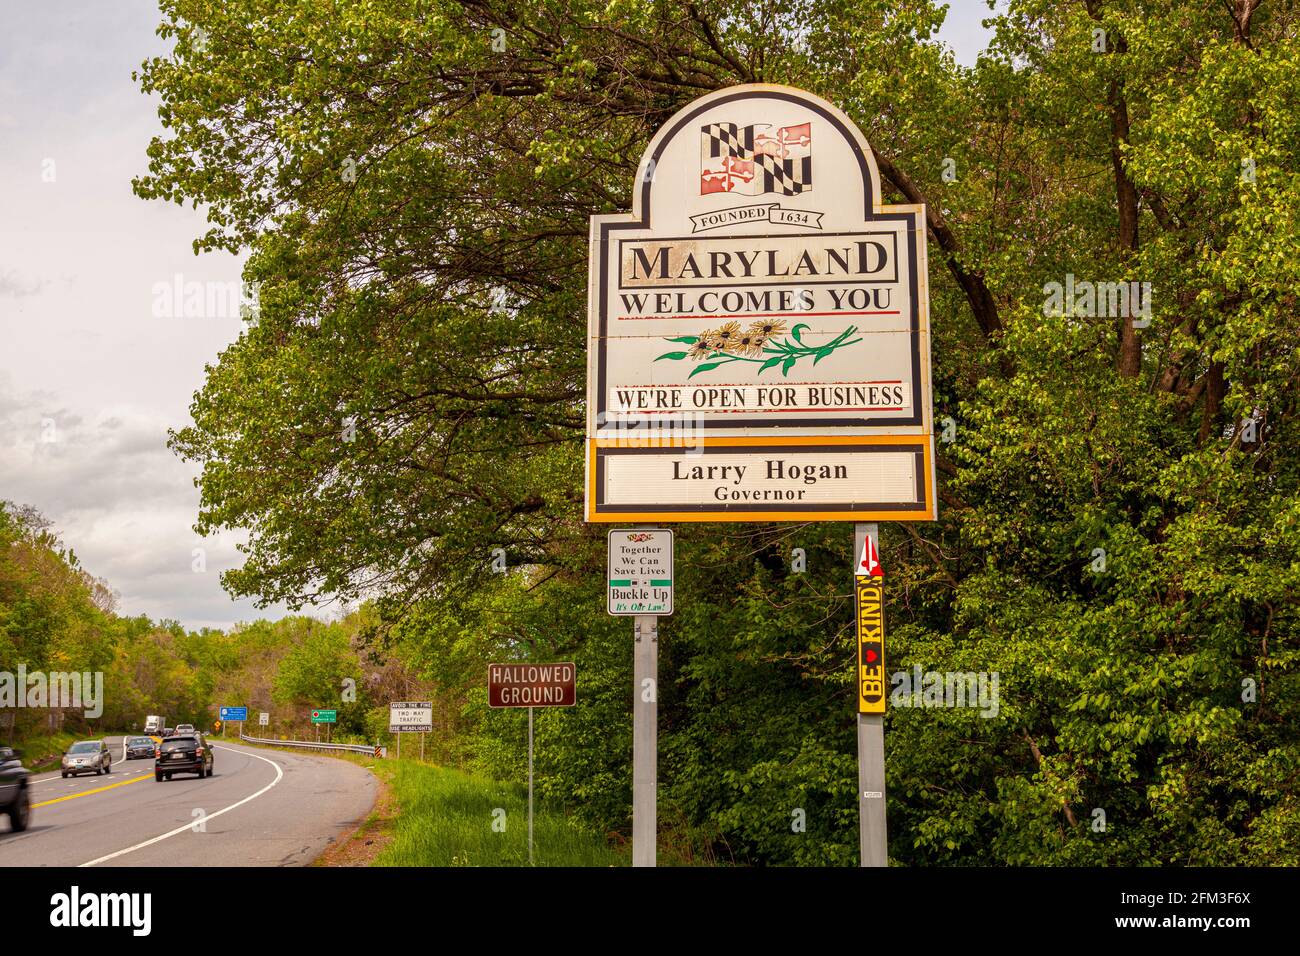 Il Maryland ti dà il benvenuto sulla strada panoramica della US Route 15 al confine tra il Maryland e la Virginia. Ha la bandiera MD e dice aperto per il commercio. Foto Stock